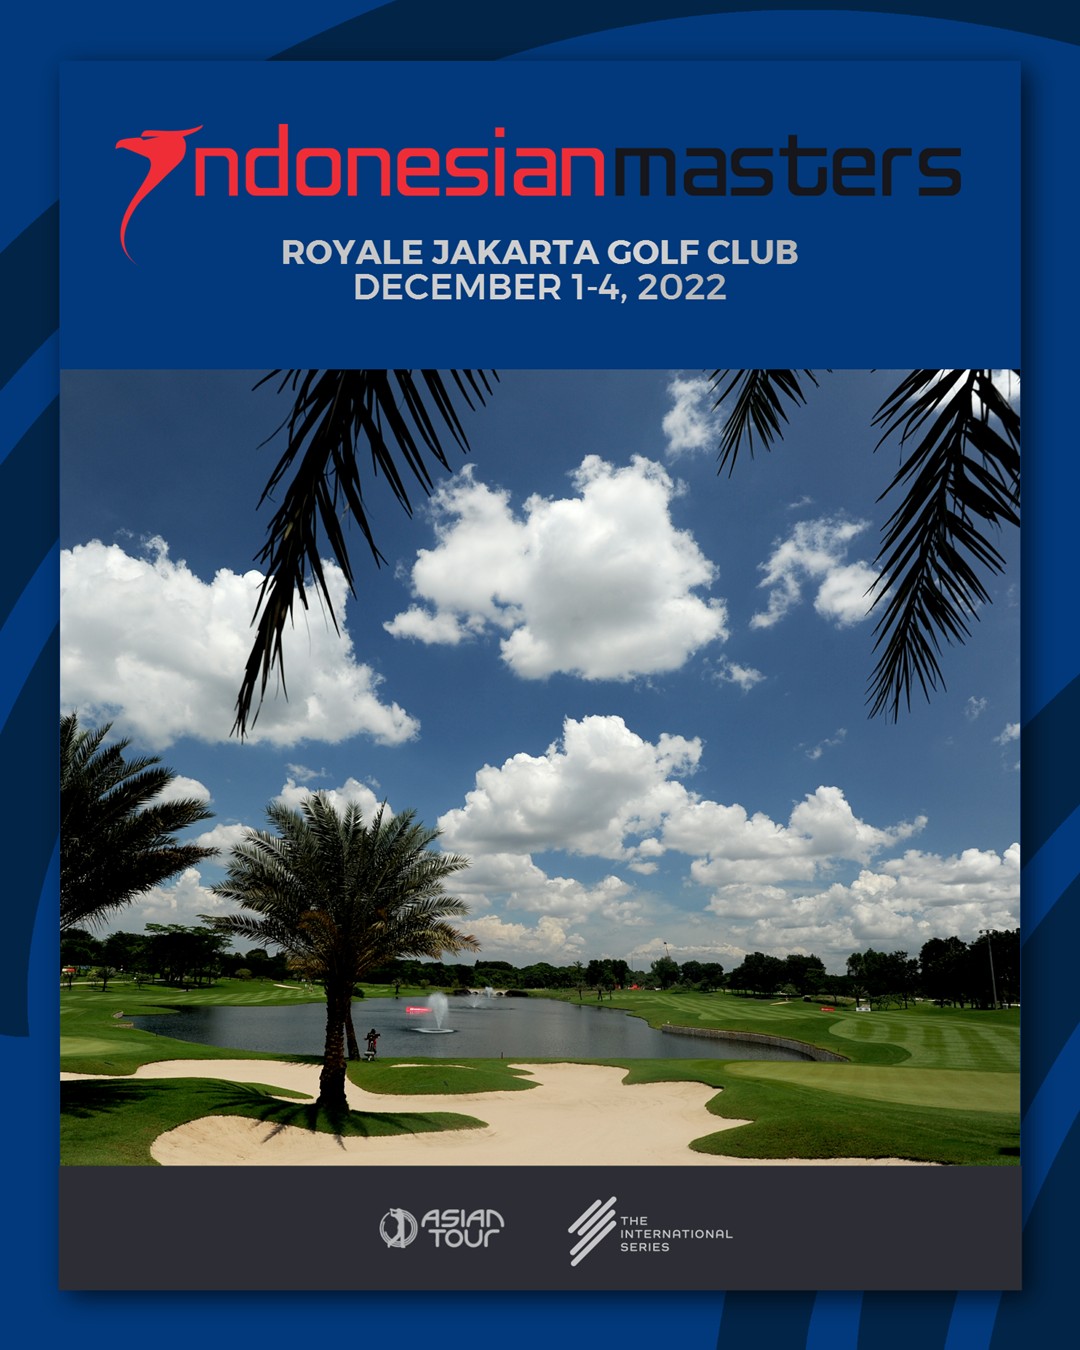 ดูบอลสด: Asian Tour Indonesian Masters 2022